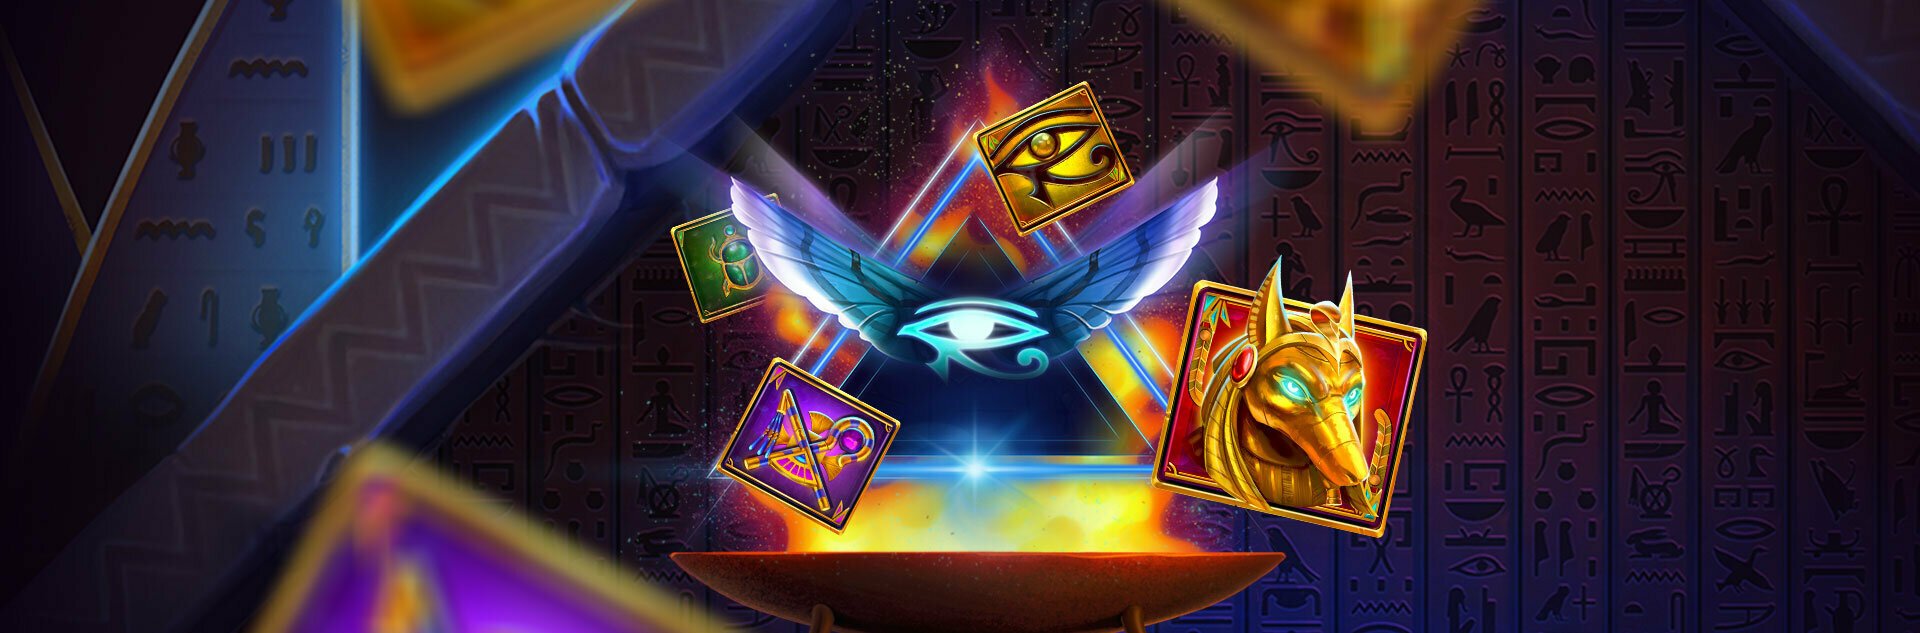 Play Vault of Anubis Free Slot